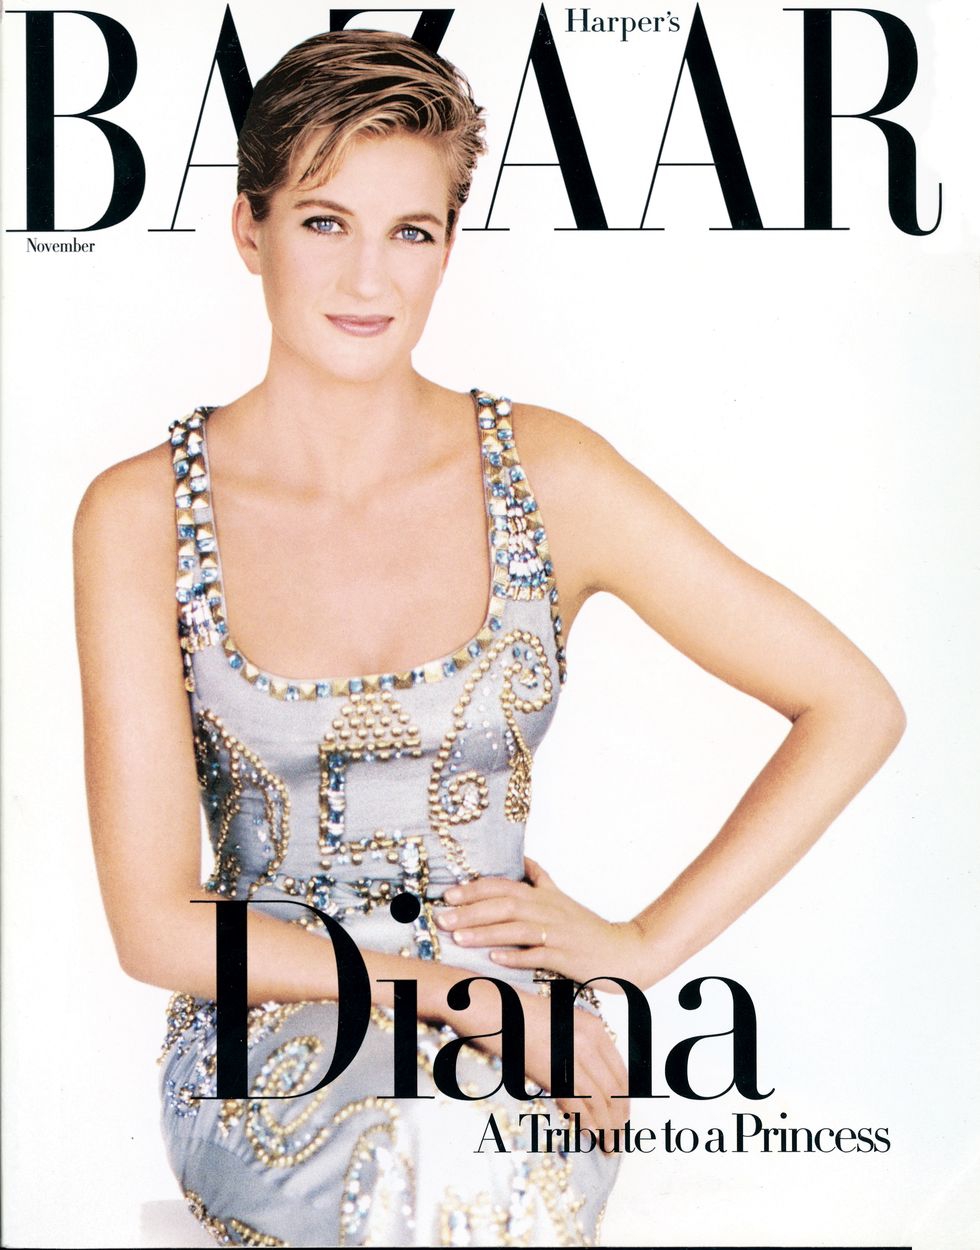 Princess Diana di edisi November 1997, difoto oleh Patrick Demarchelier.